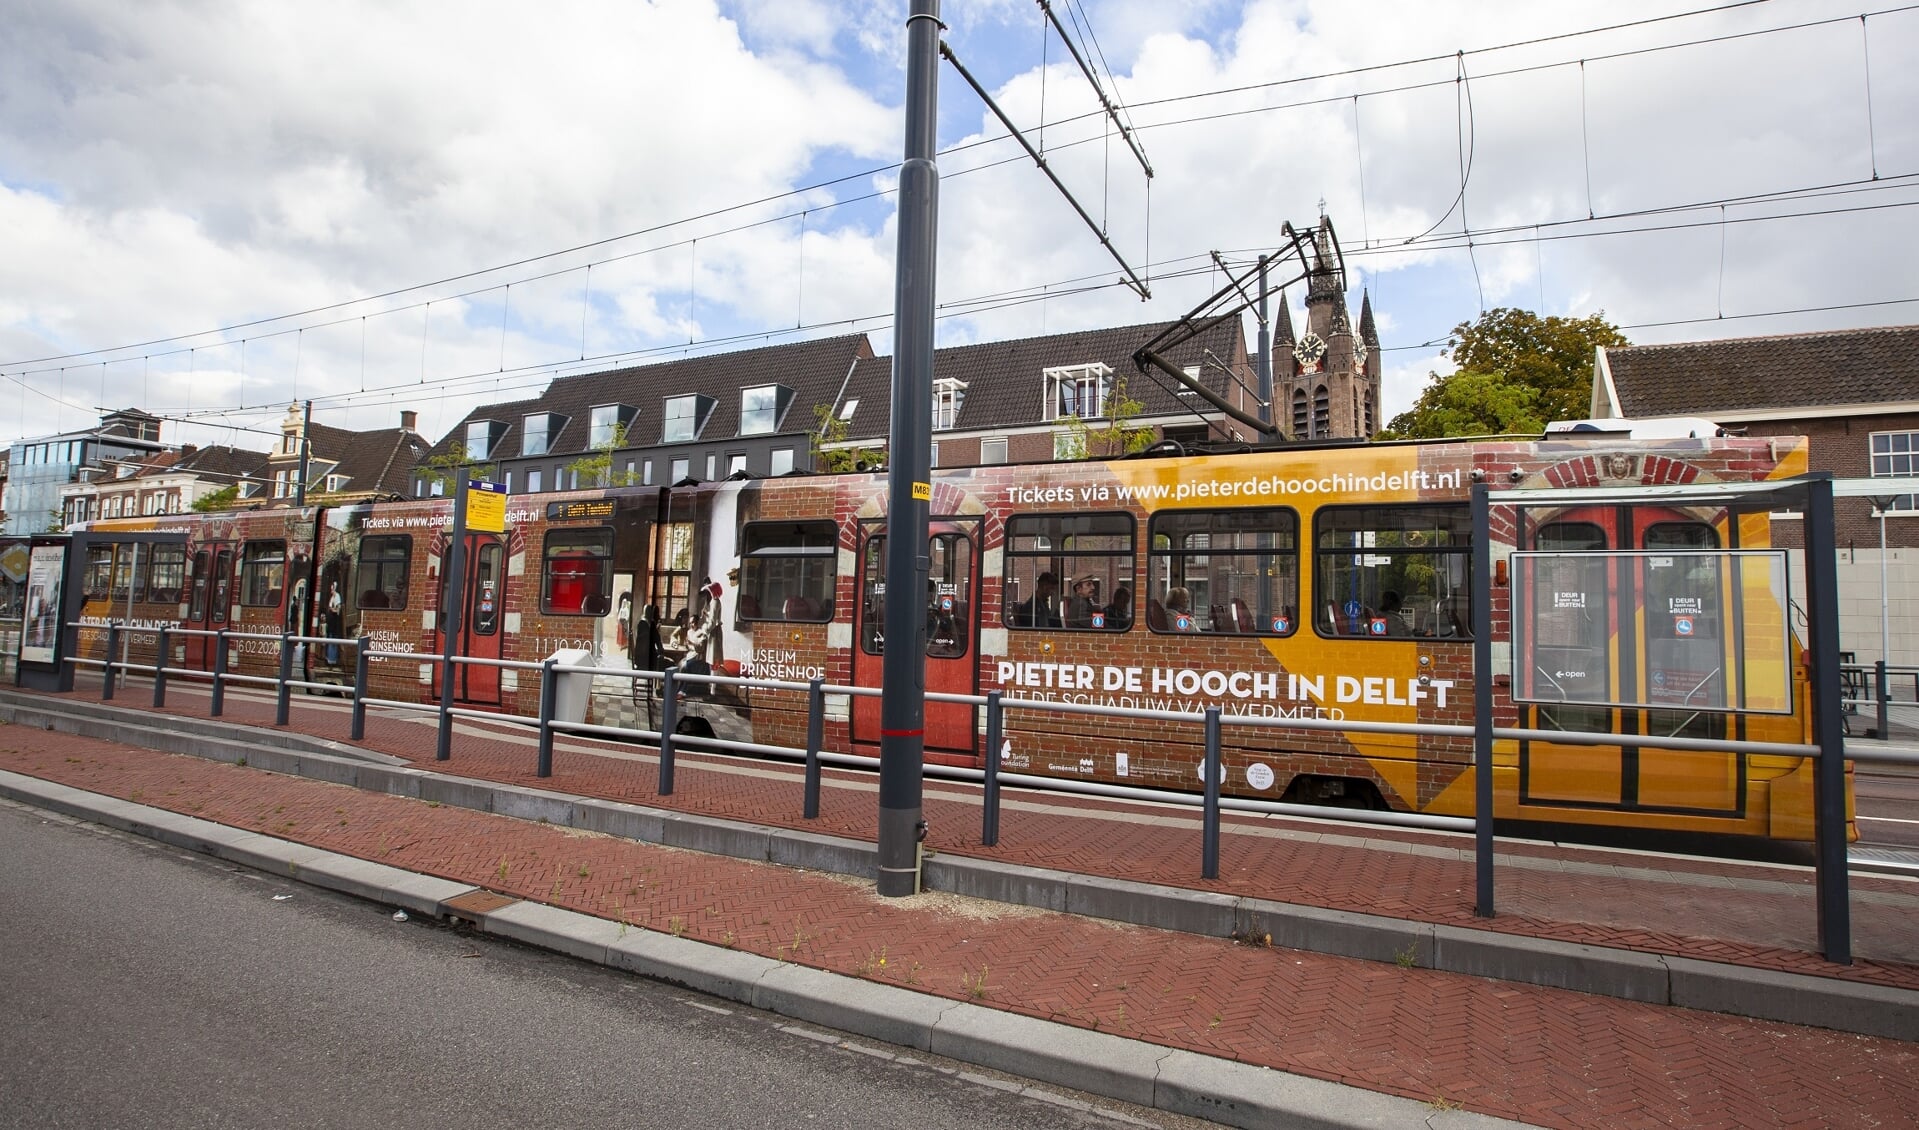 De unieke en speciale Pieter de Hooch-tram die door Delft rijdt!